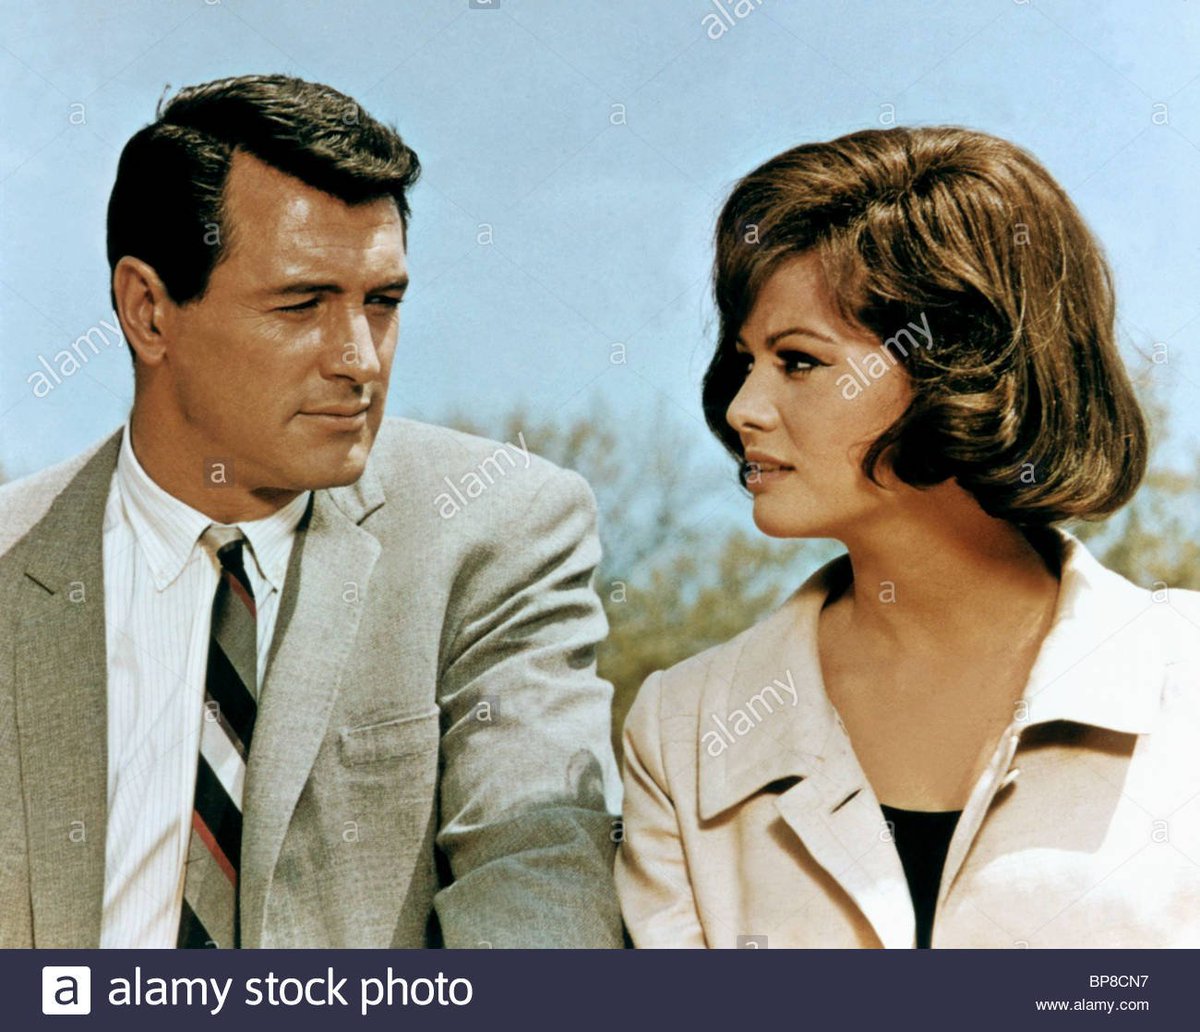 Les Yeux bandés (1965) - AnglaisPhilip DunneC'est pas un film culte mais c'est une comédie d'espionnage américaine des années 1960. J'en avais besoin pour me faire une idée.